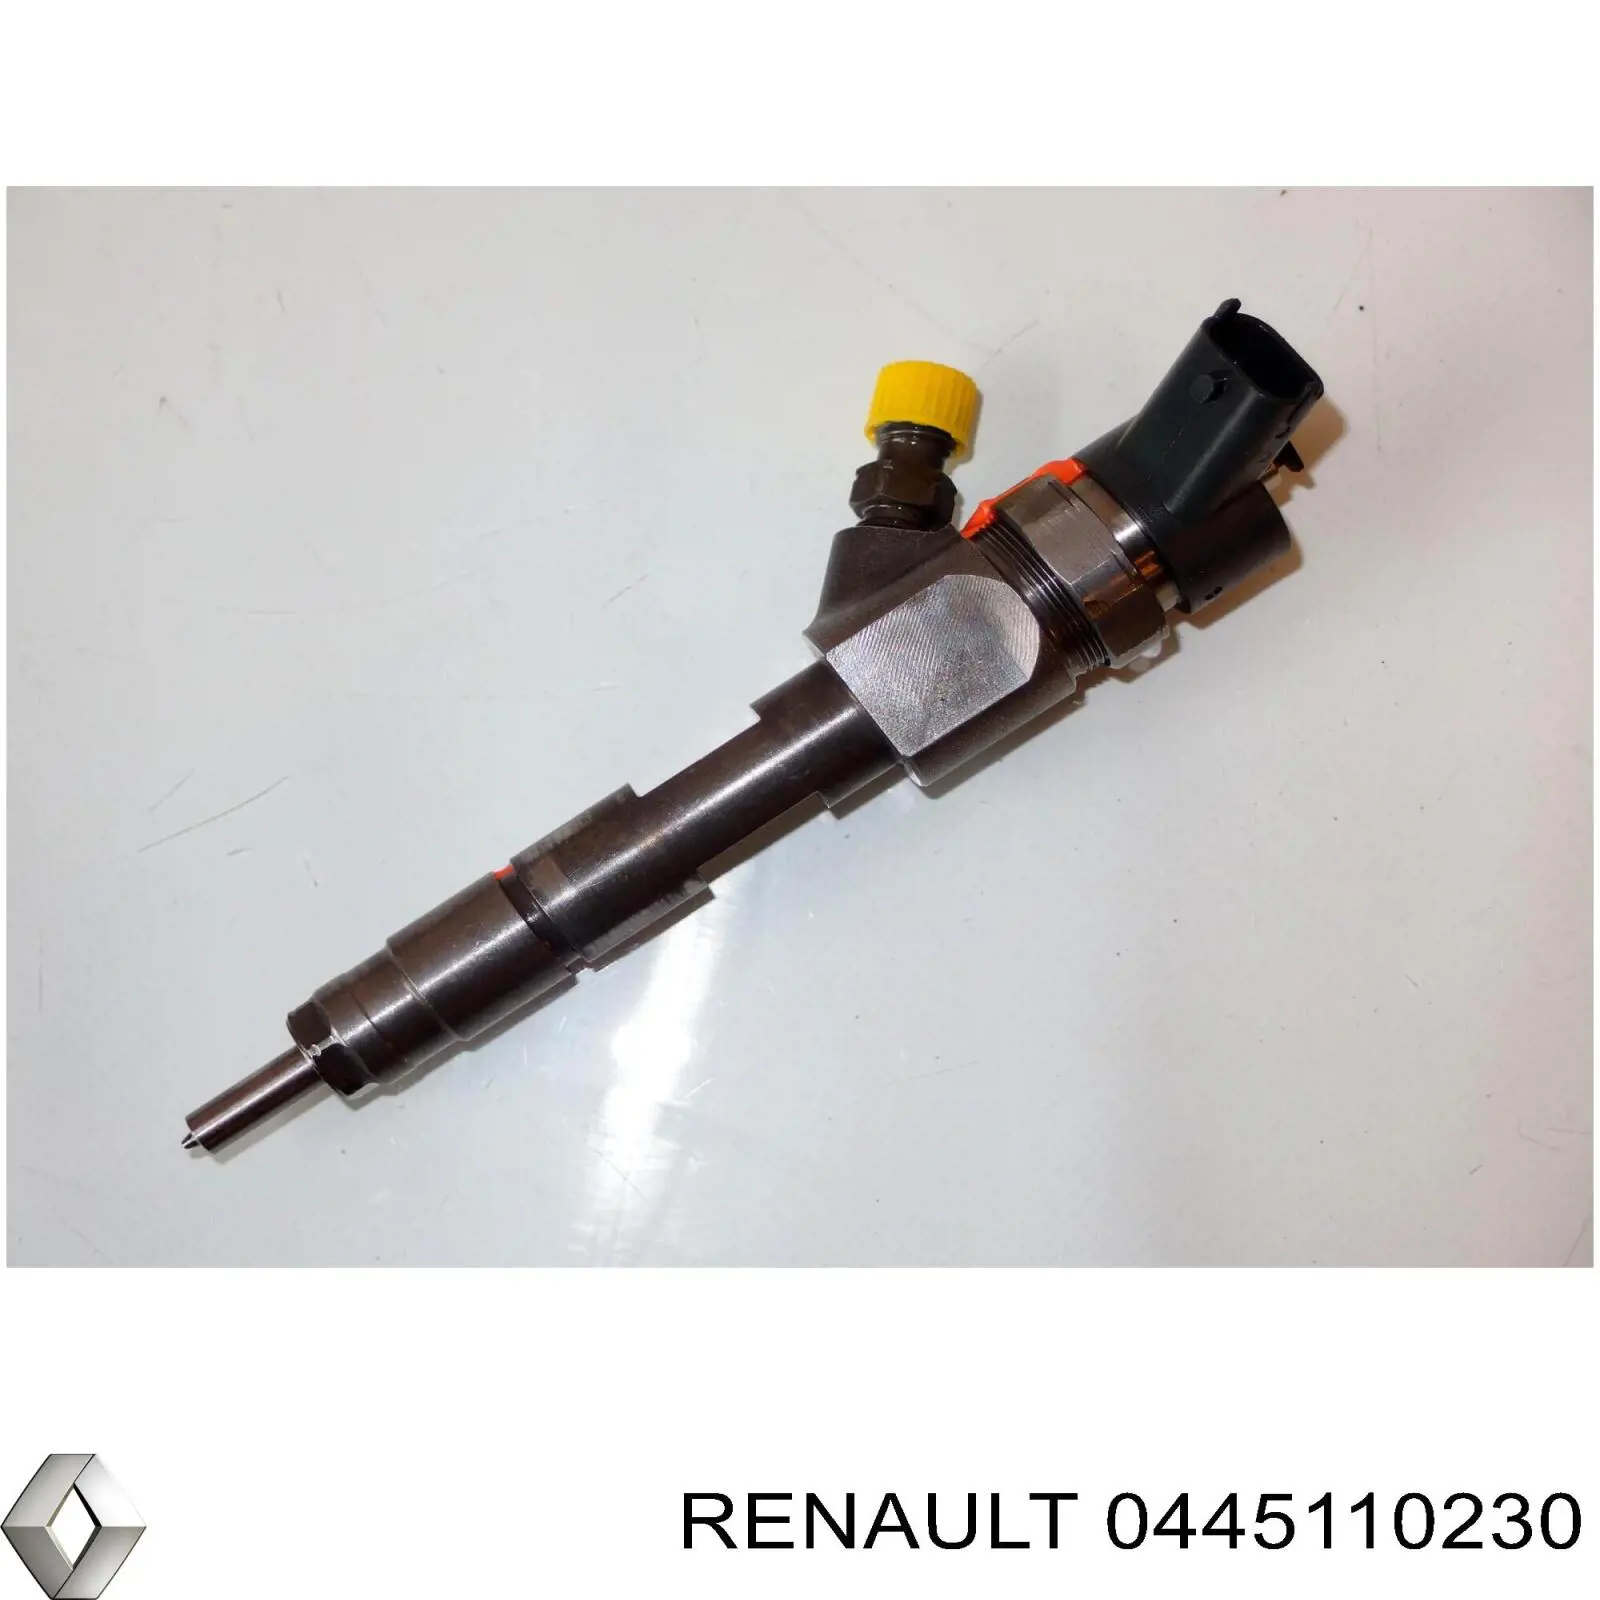 0445110230 Renault (RVI) injetor de injeção de combustível